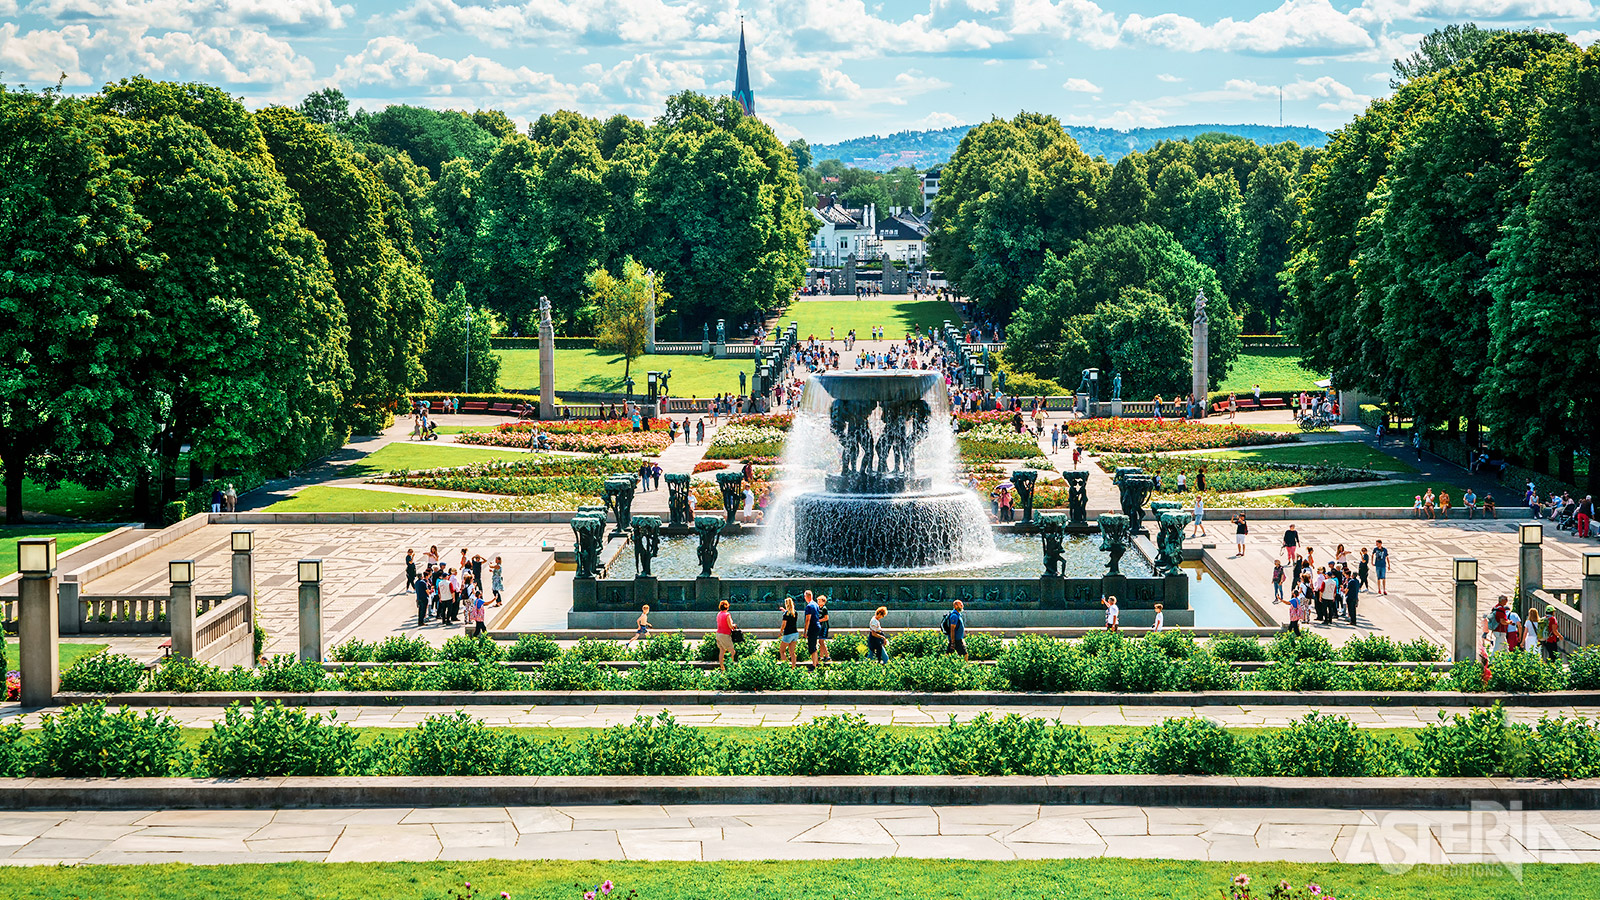 Eén van de populairste attracties in Oslo is het openluchtmuseum Vigeland